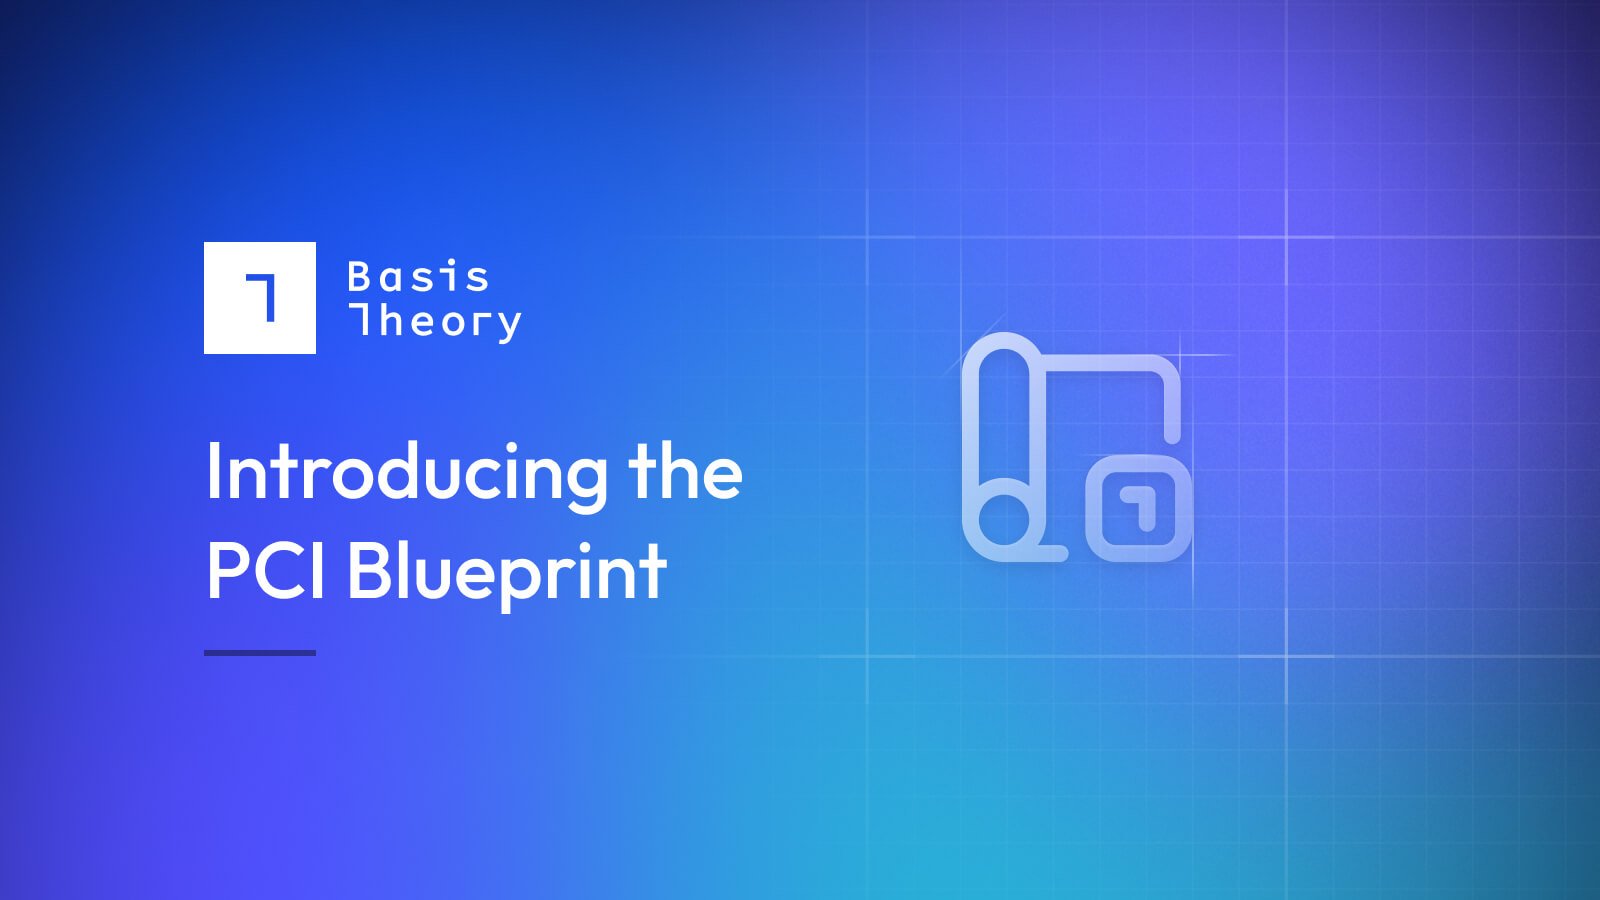 introducing the PCI blueprint